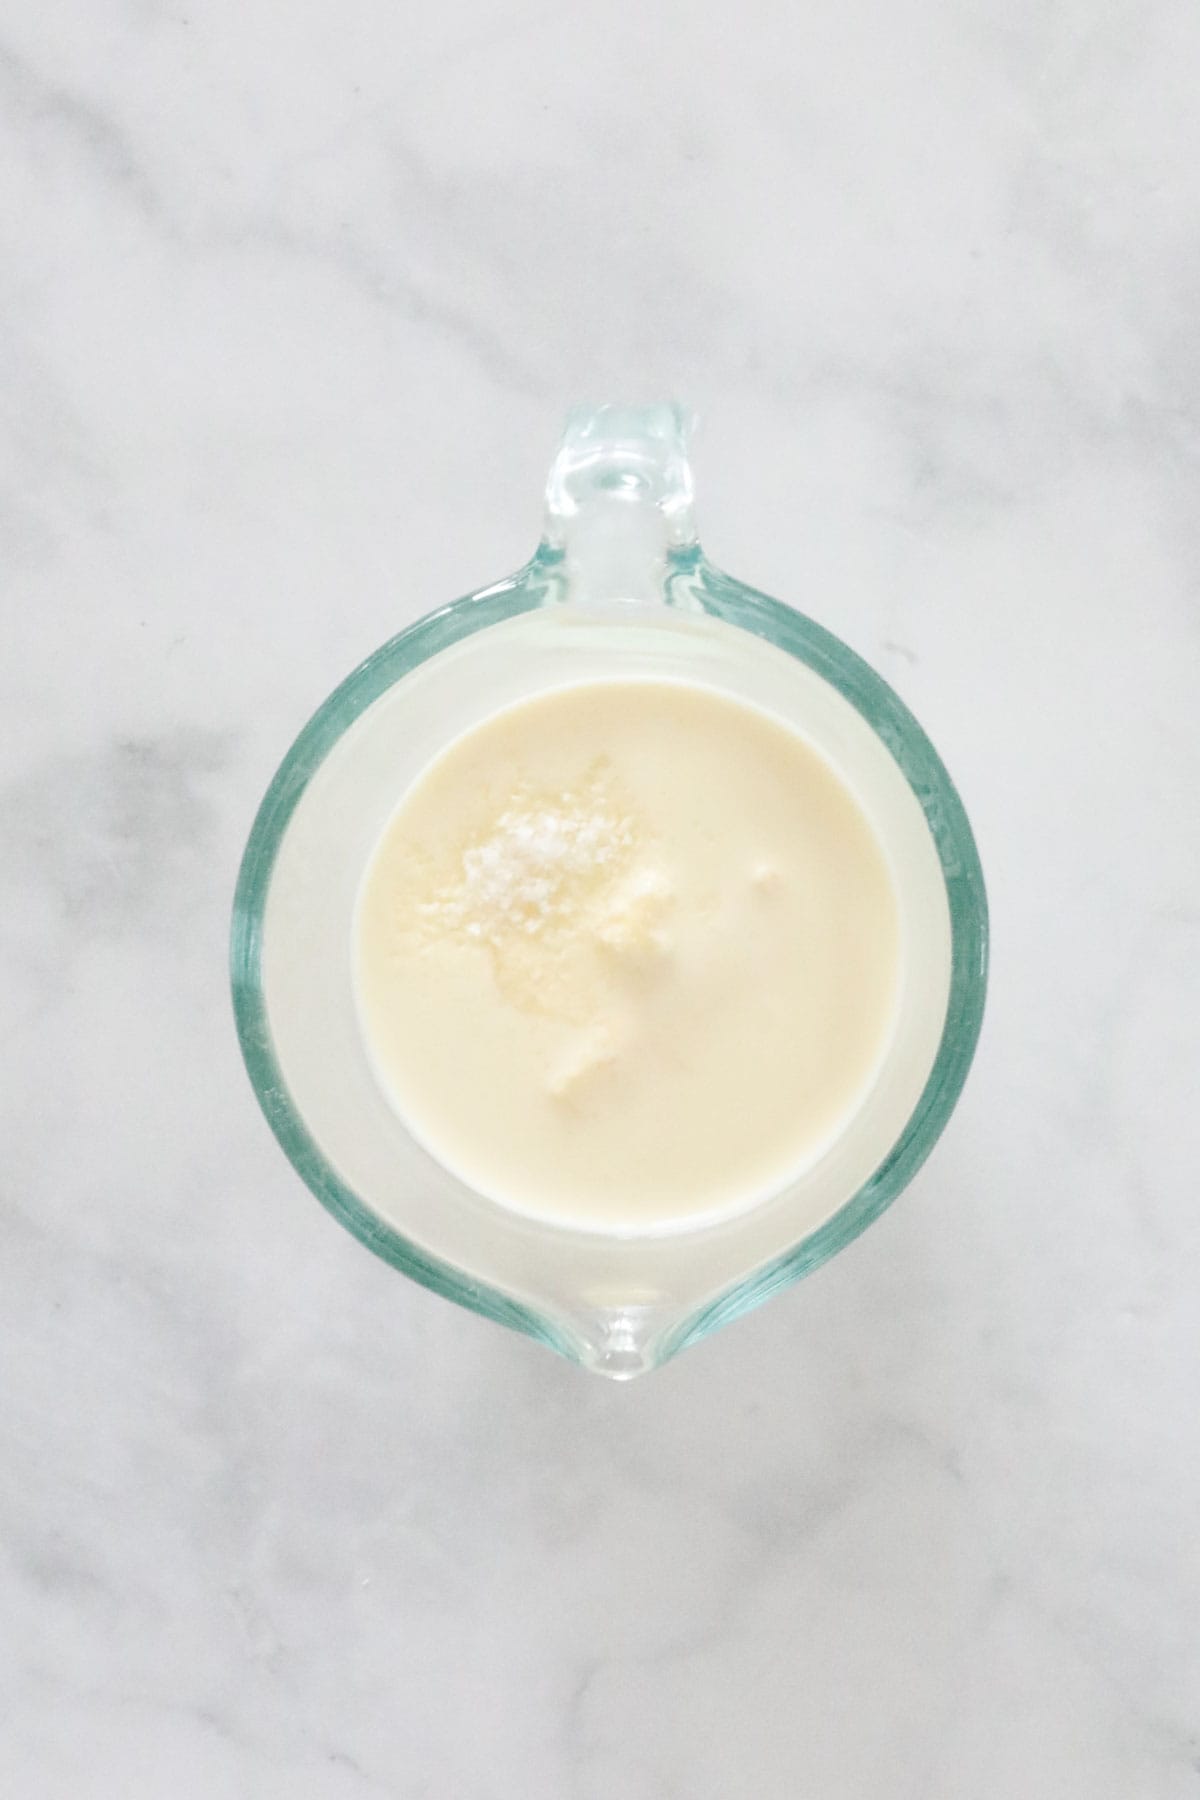 Cream, Baileys and butter in a heatproof jug.